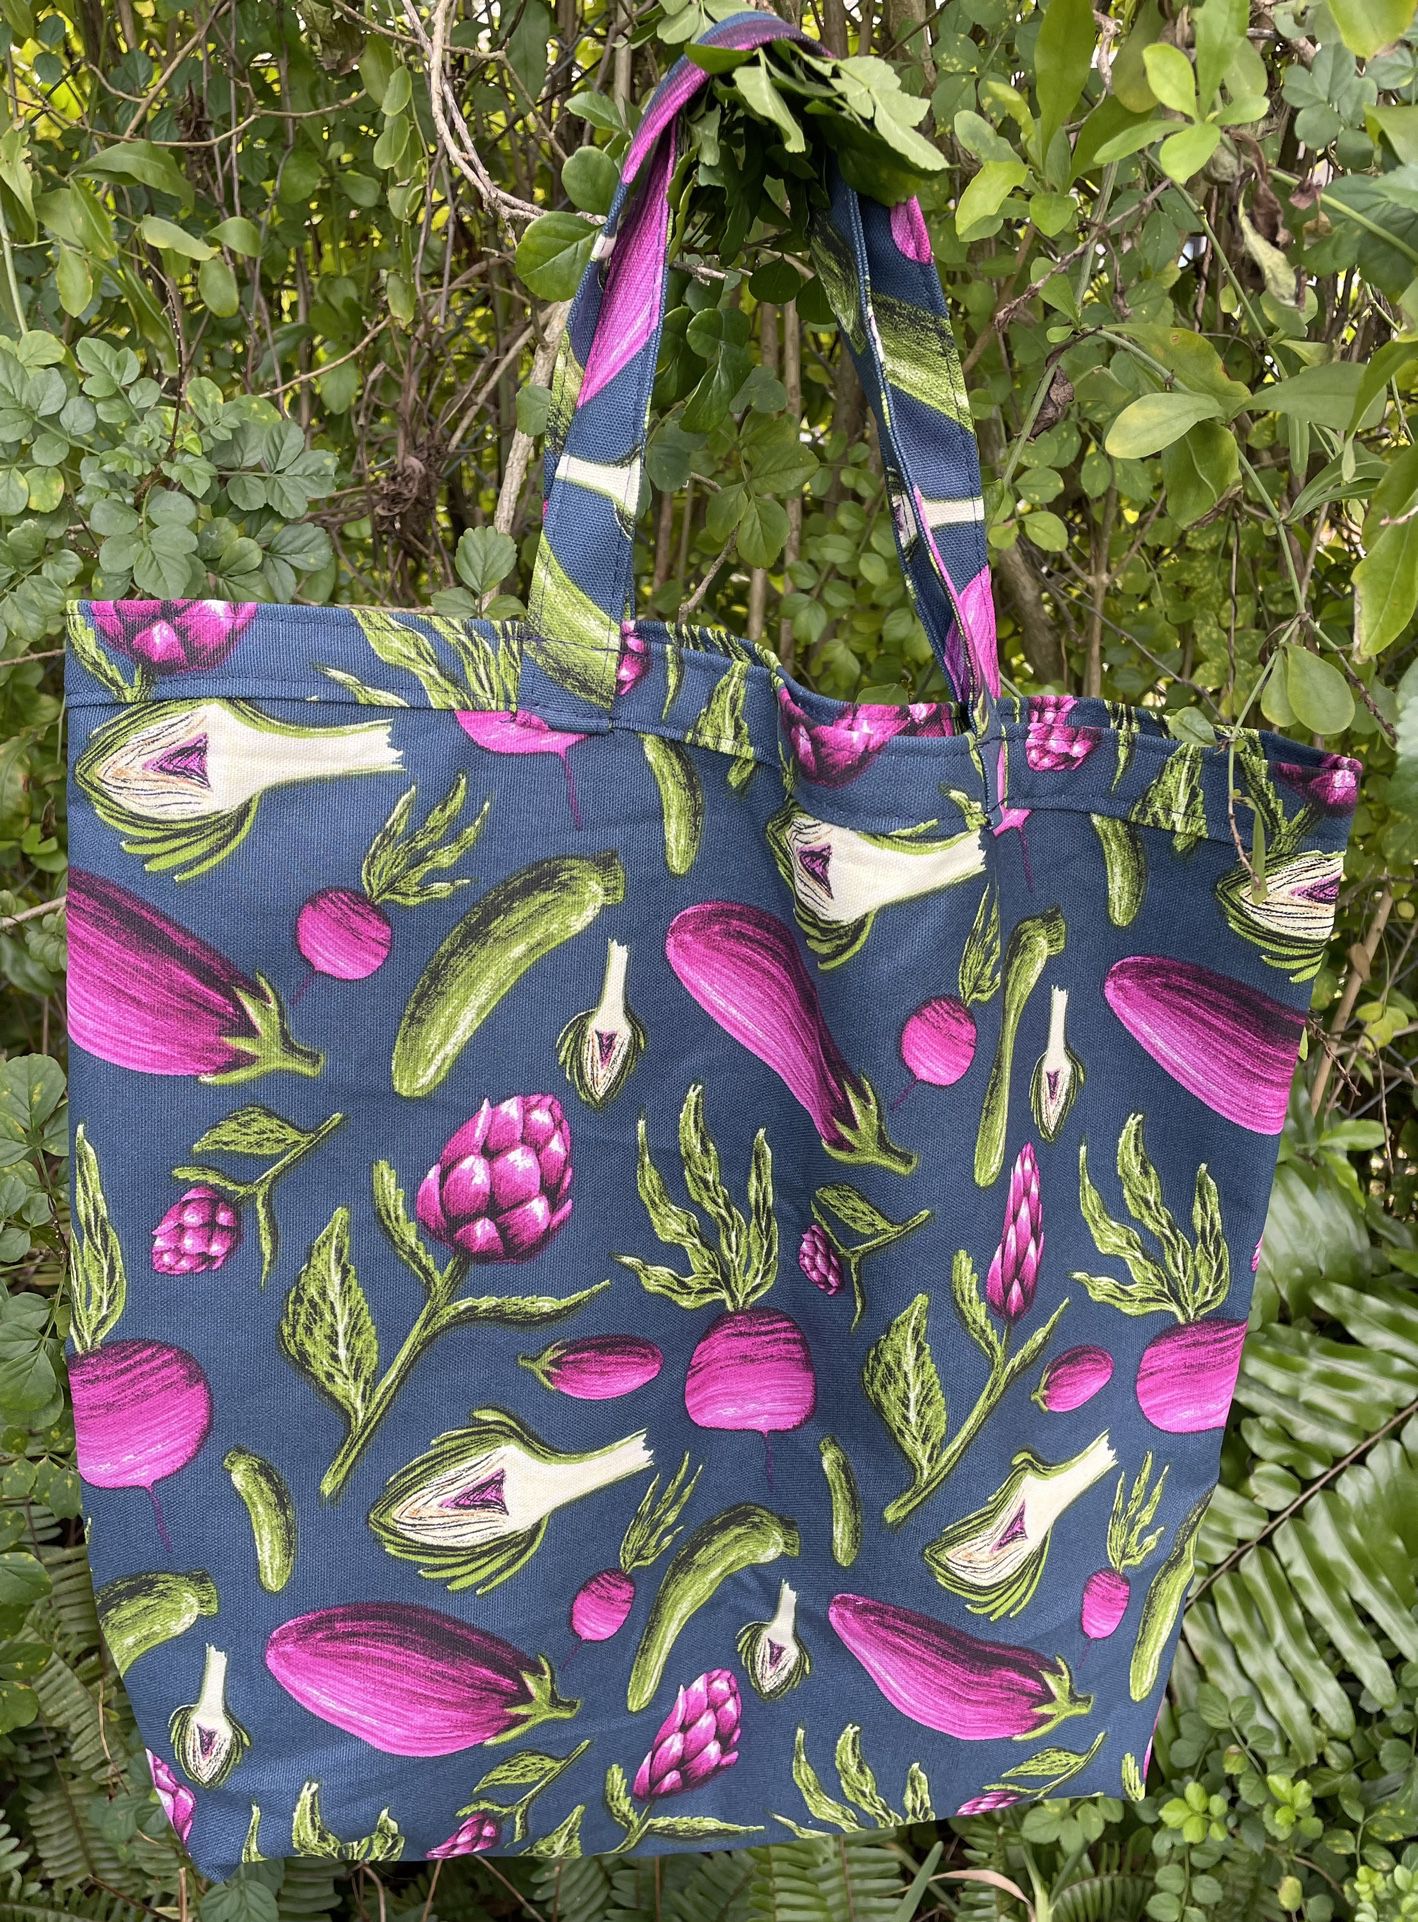 Vegetable Tote/Shopping Bag, Handmade